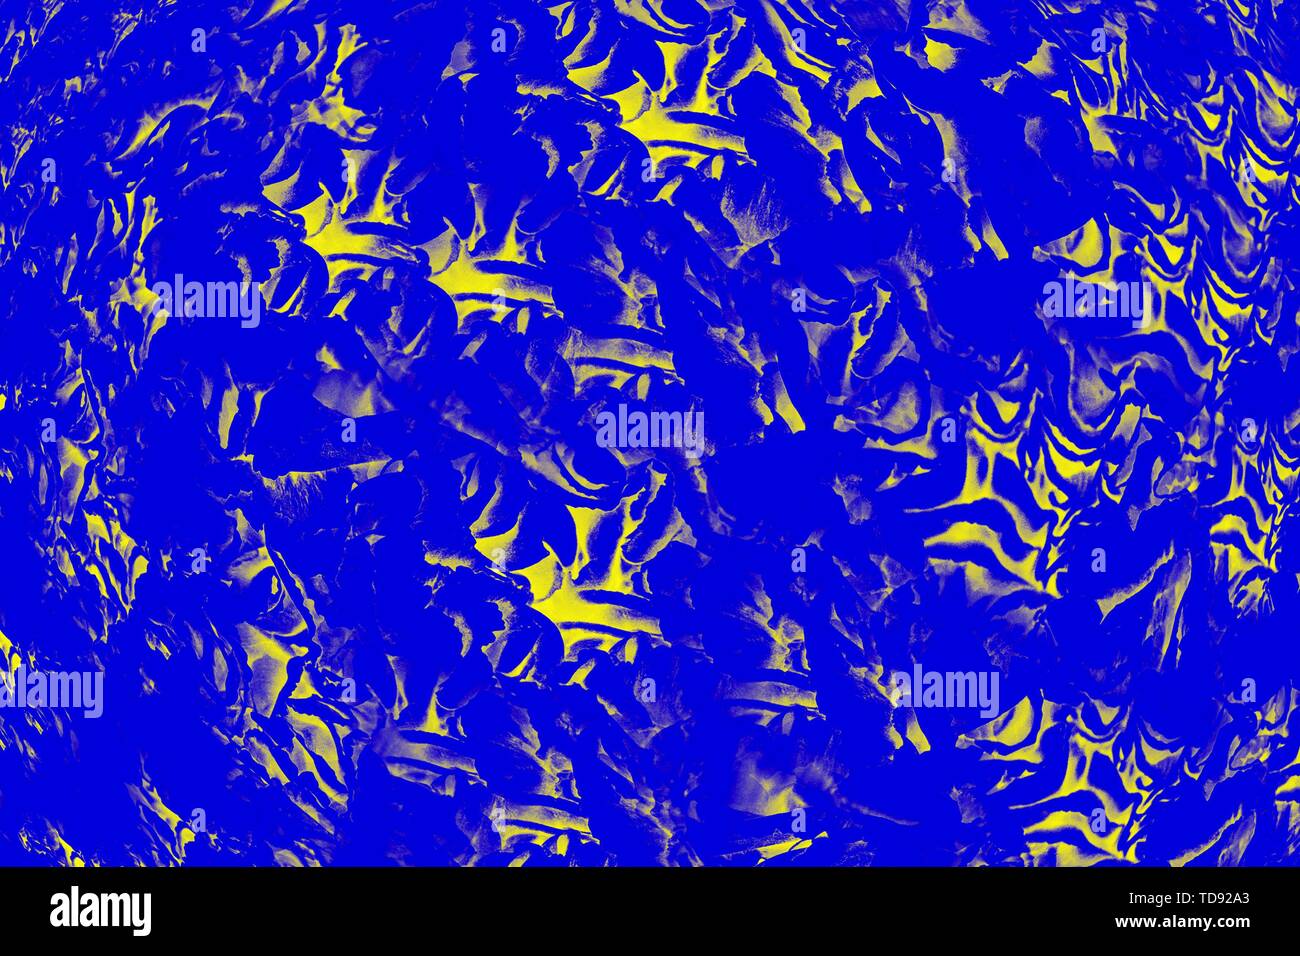 Fond bleu-jaune lumineux avec des éléments. Abstract background Banque D'Images